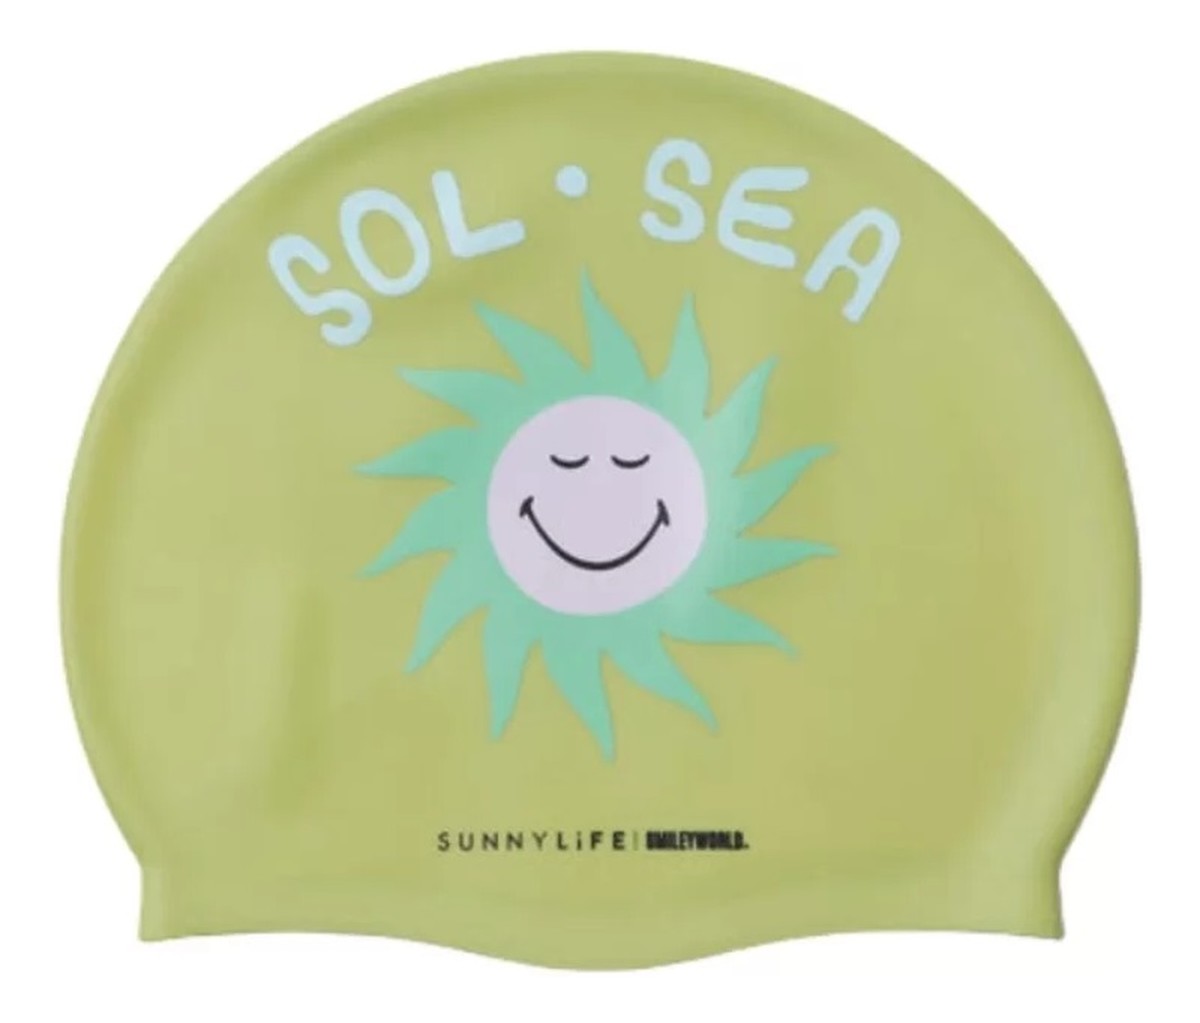 Smiley czepek basenowy world sol sea